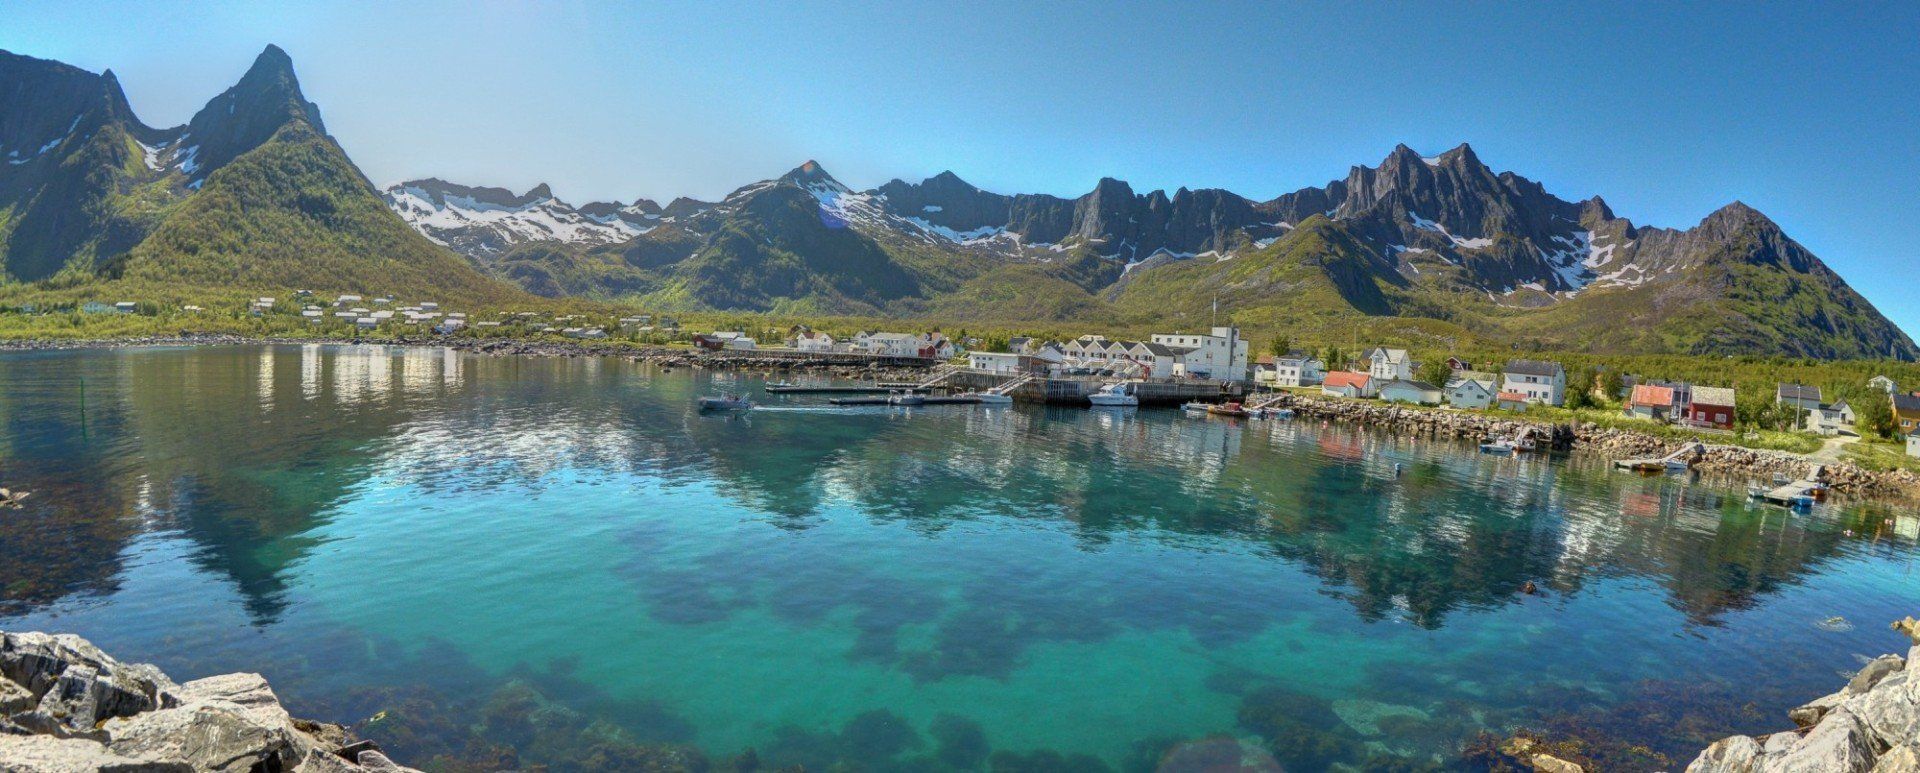 Mefjord Brygge vom eer aus betrachtet